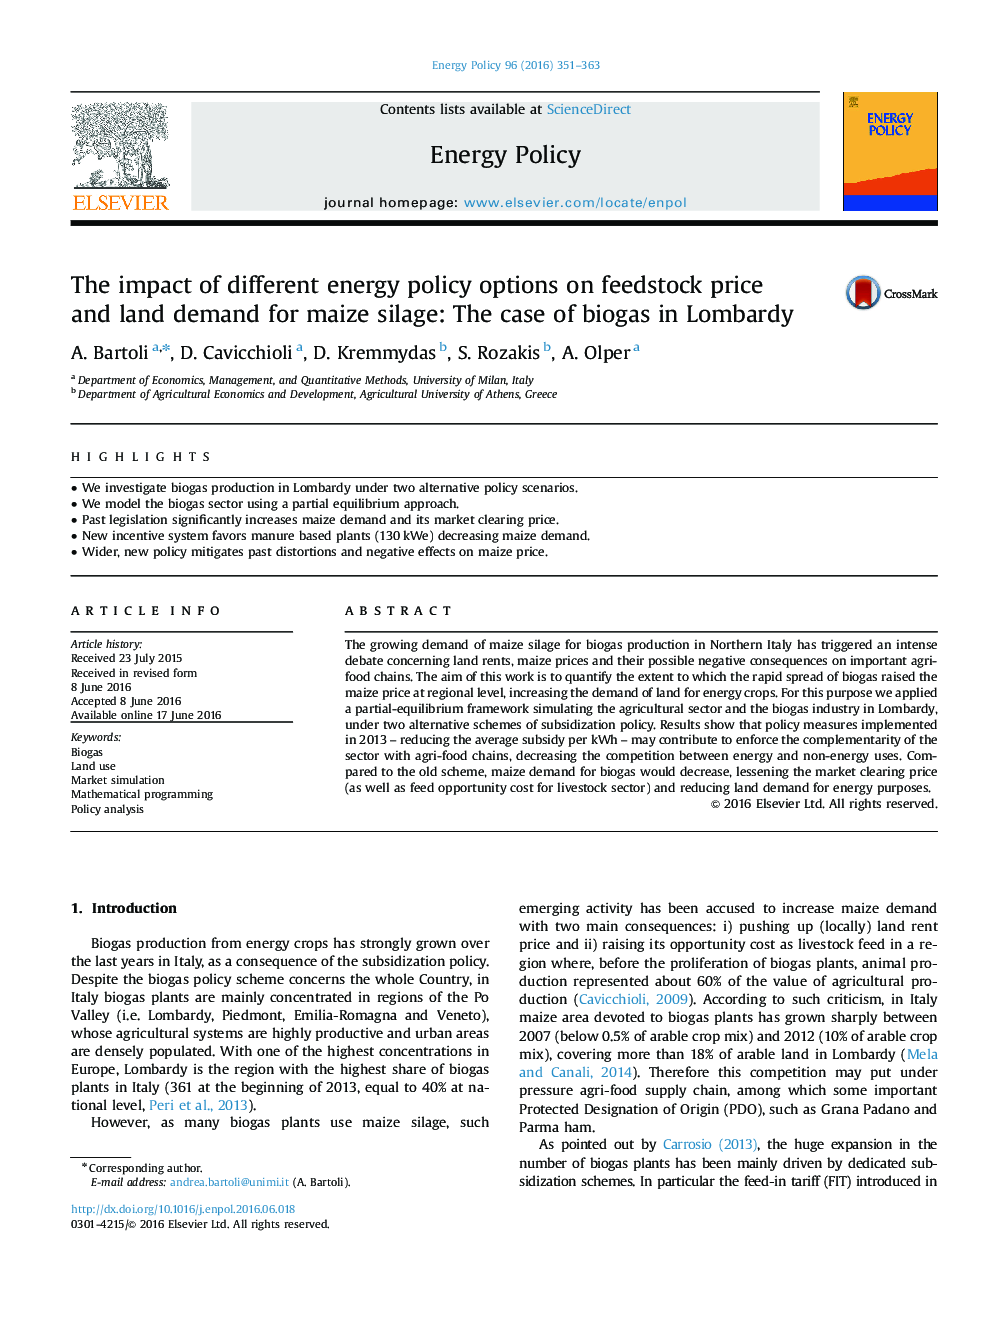 تأثیر گزینه های مختلف سیاست انرژی بر قیمت مواد اولیه و تقاضای زمین برای سیلوهای ذرت: مورد بیوگاز در لومباردی 